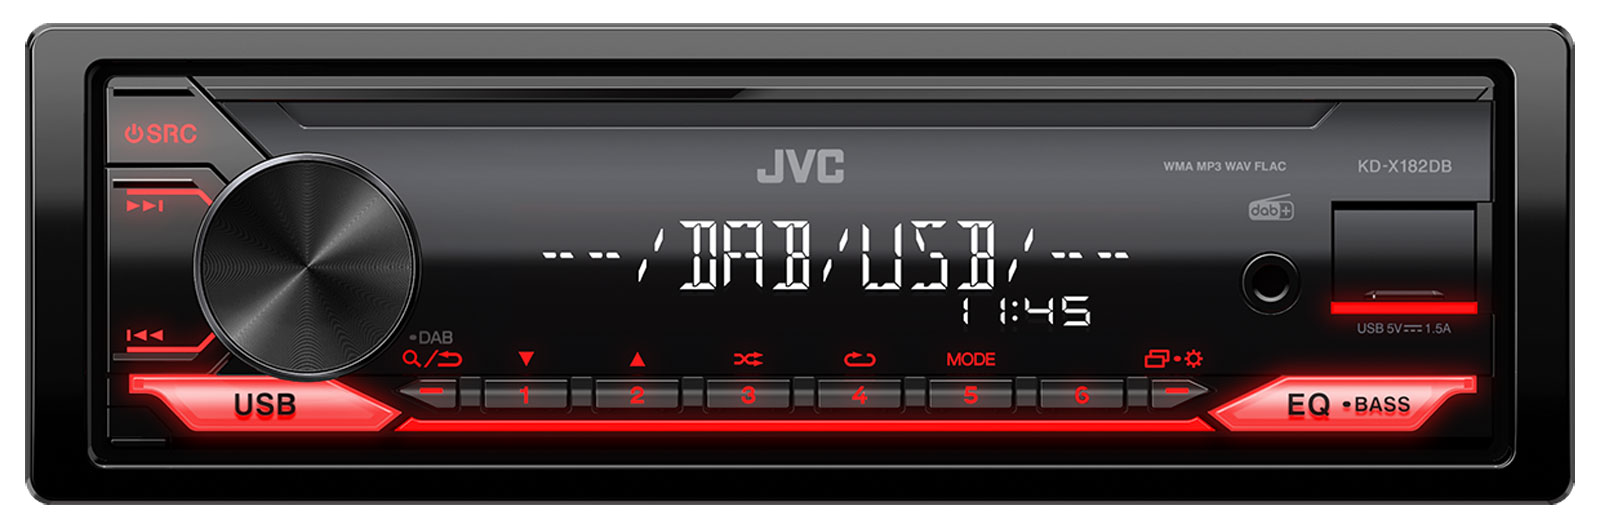 JVC KD-X182DB - MP3-Autoradio mit DAB / USB / AUX-IN